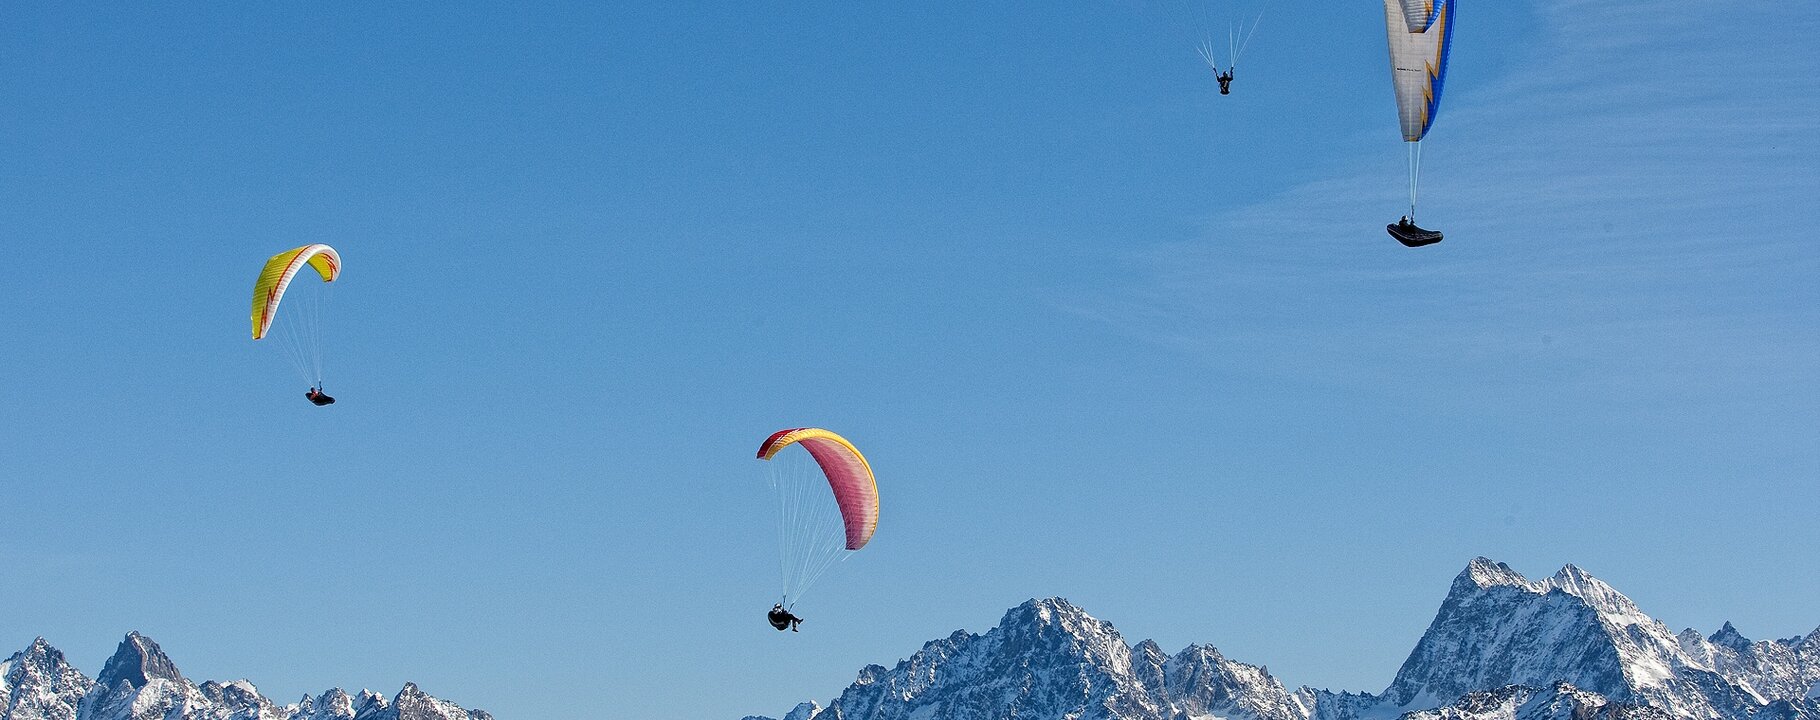 paradise for paraglider | © Serfaus-Fiss-Ladis/Tirol